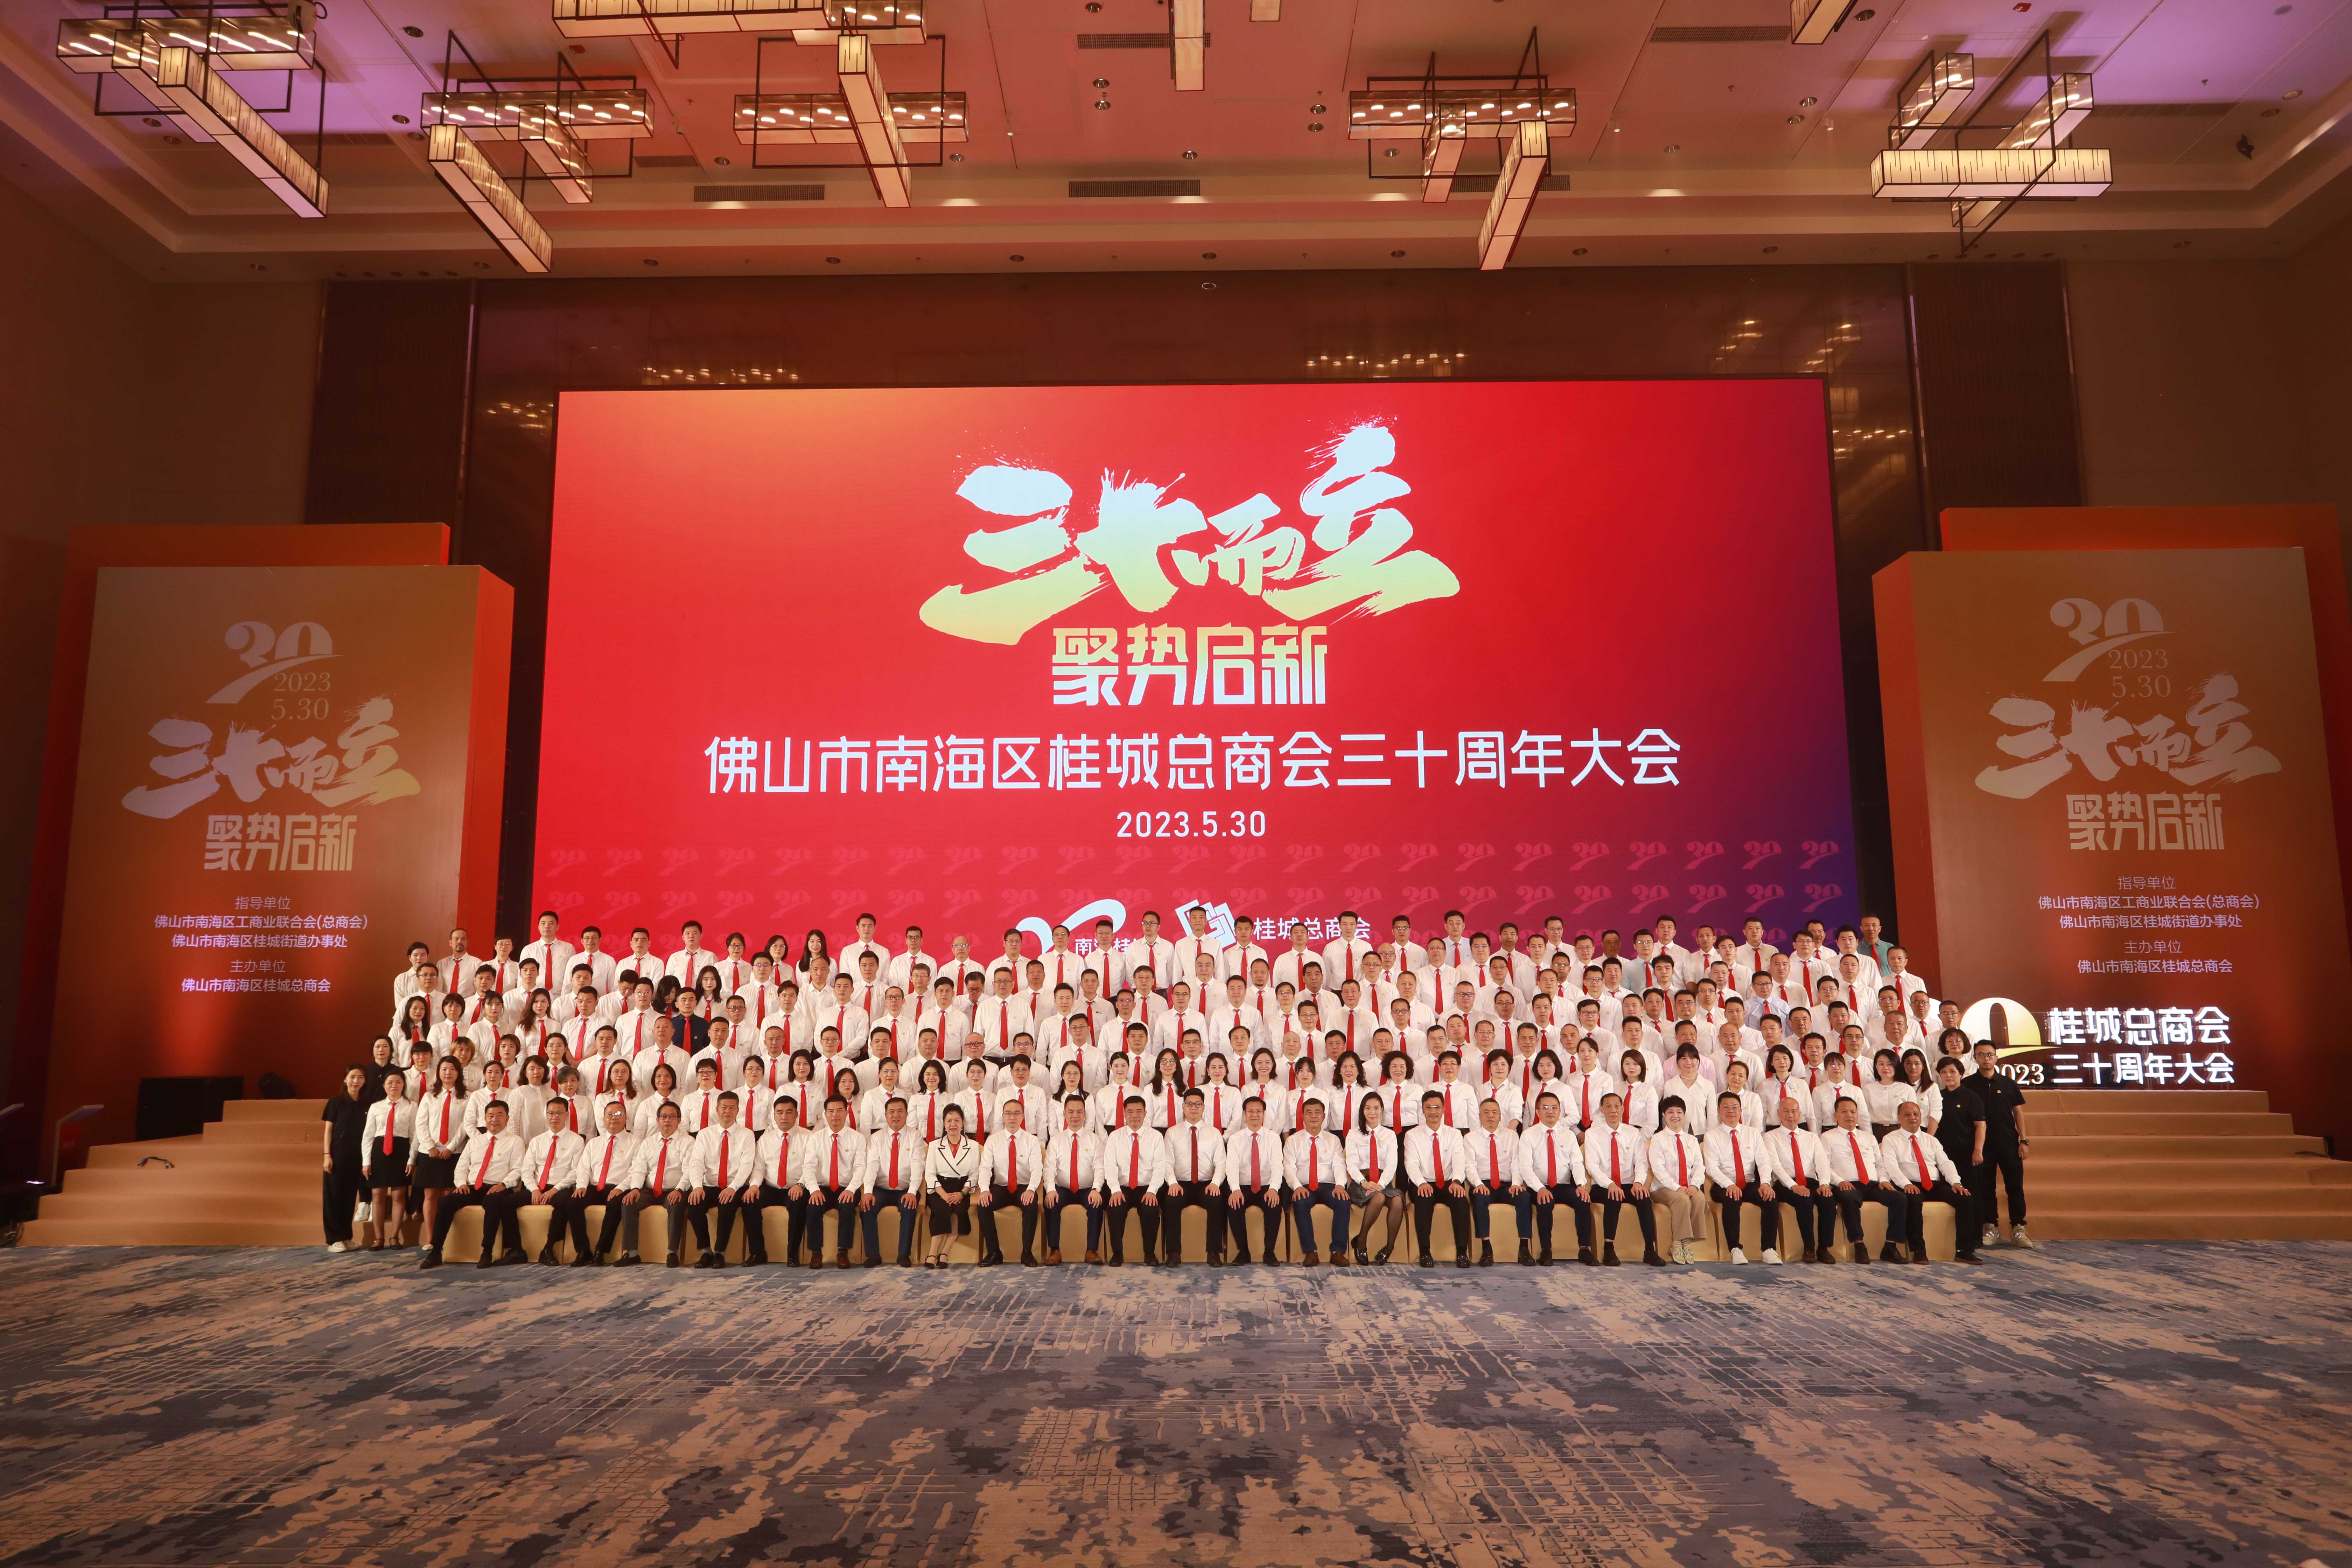 三十而立 · 聚势启新——桂城总商会召开三十周年大会